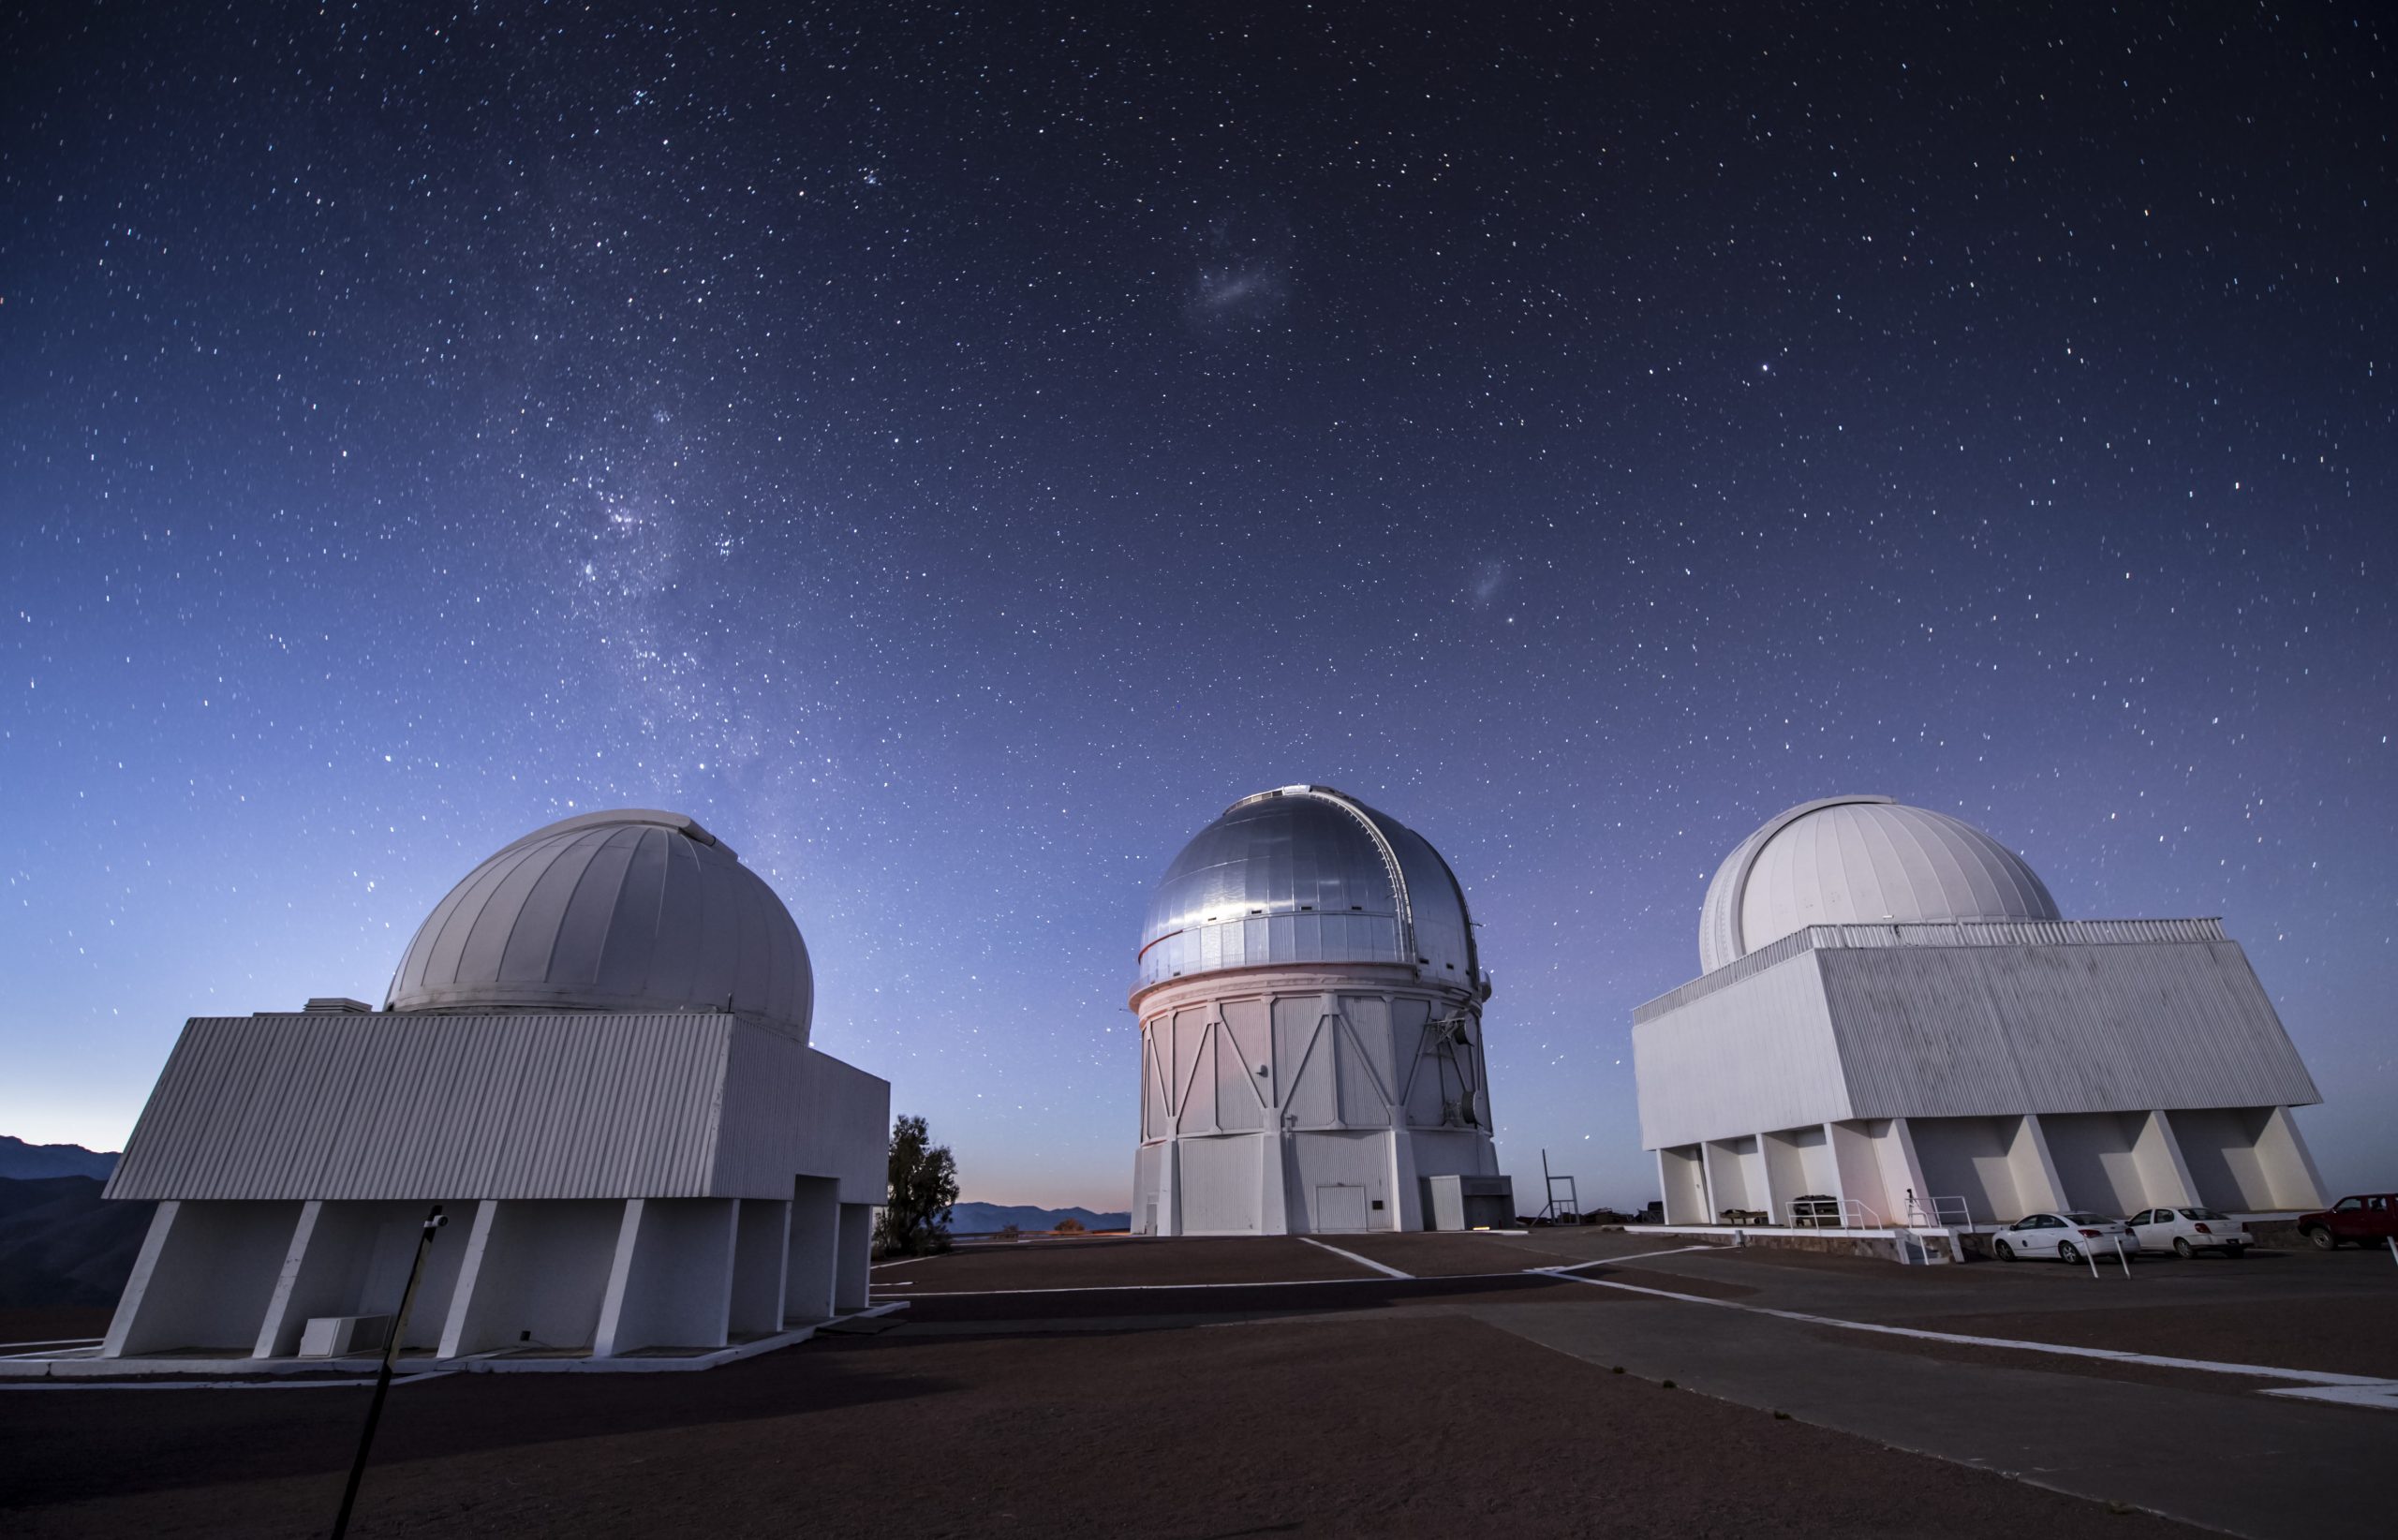 The Cerro Tololo Interamerican Observatory (CTIO) in the Chilean Andes